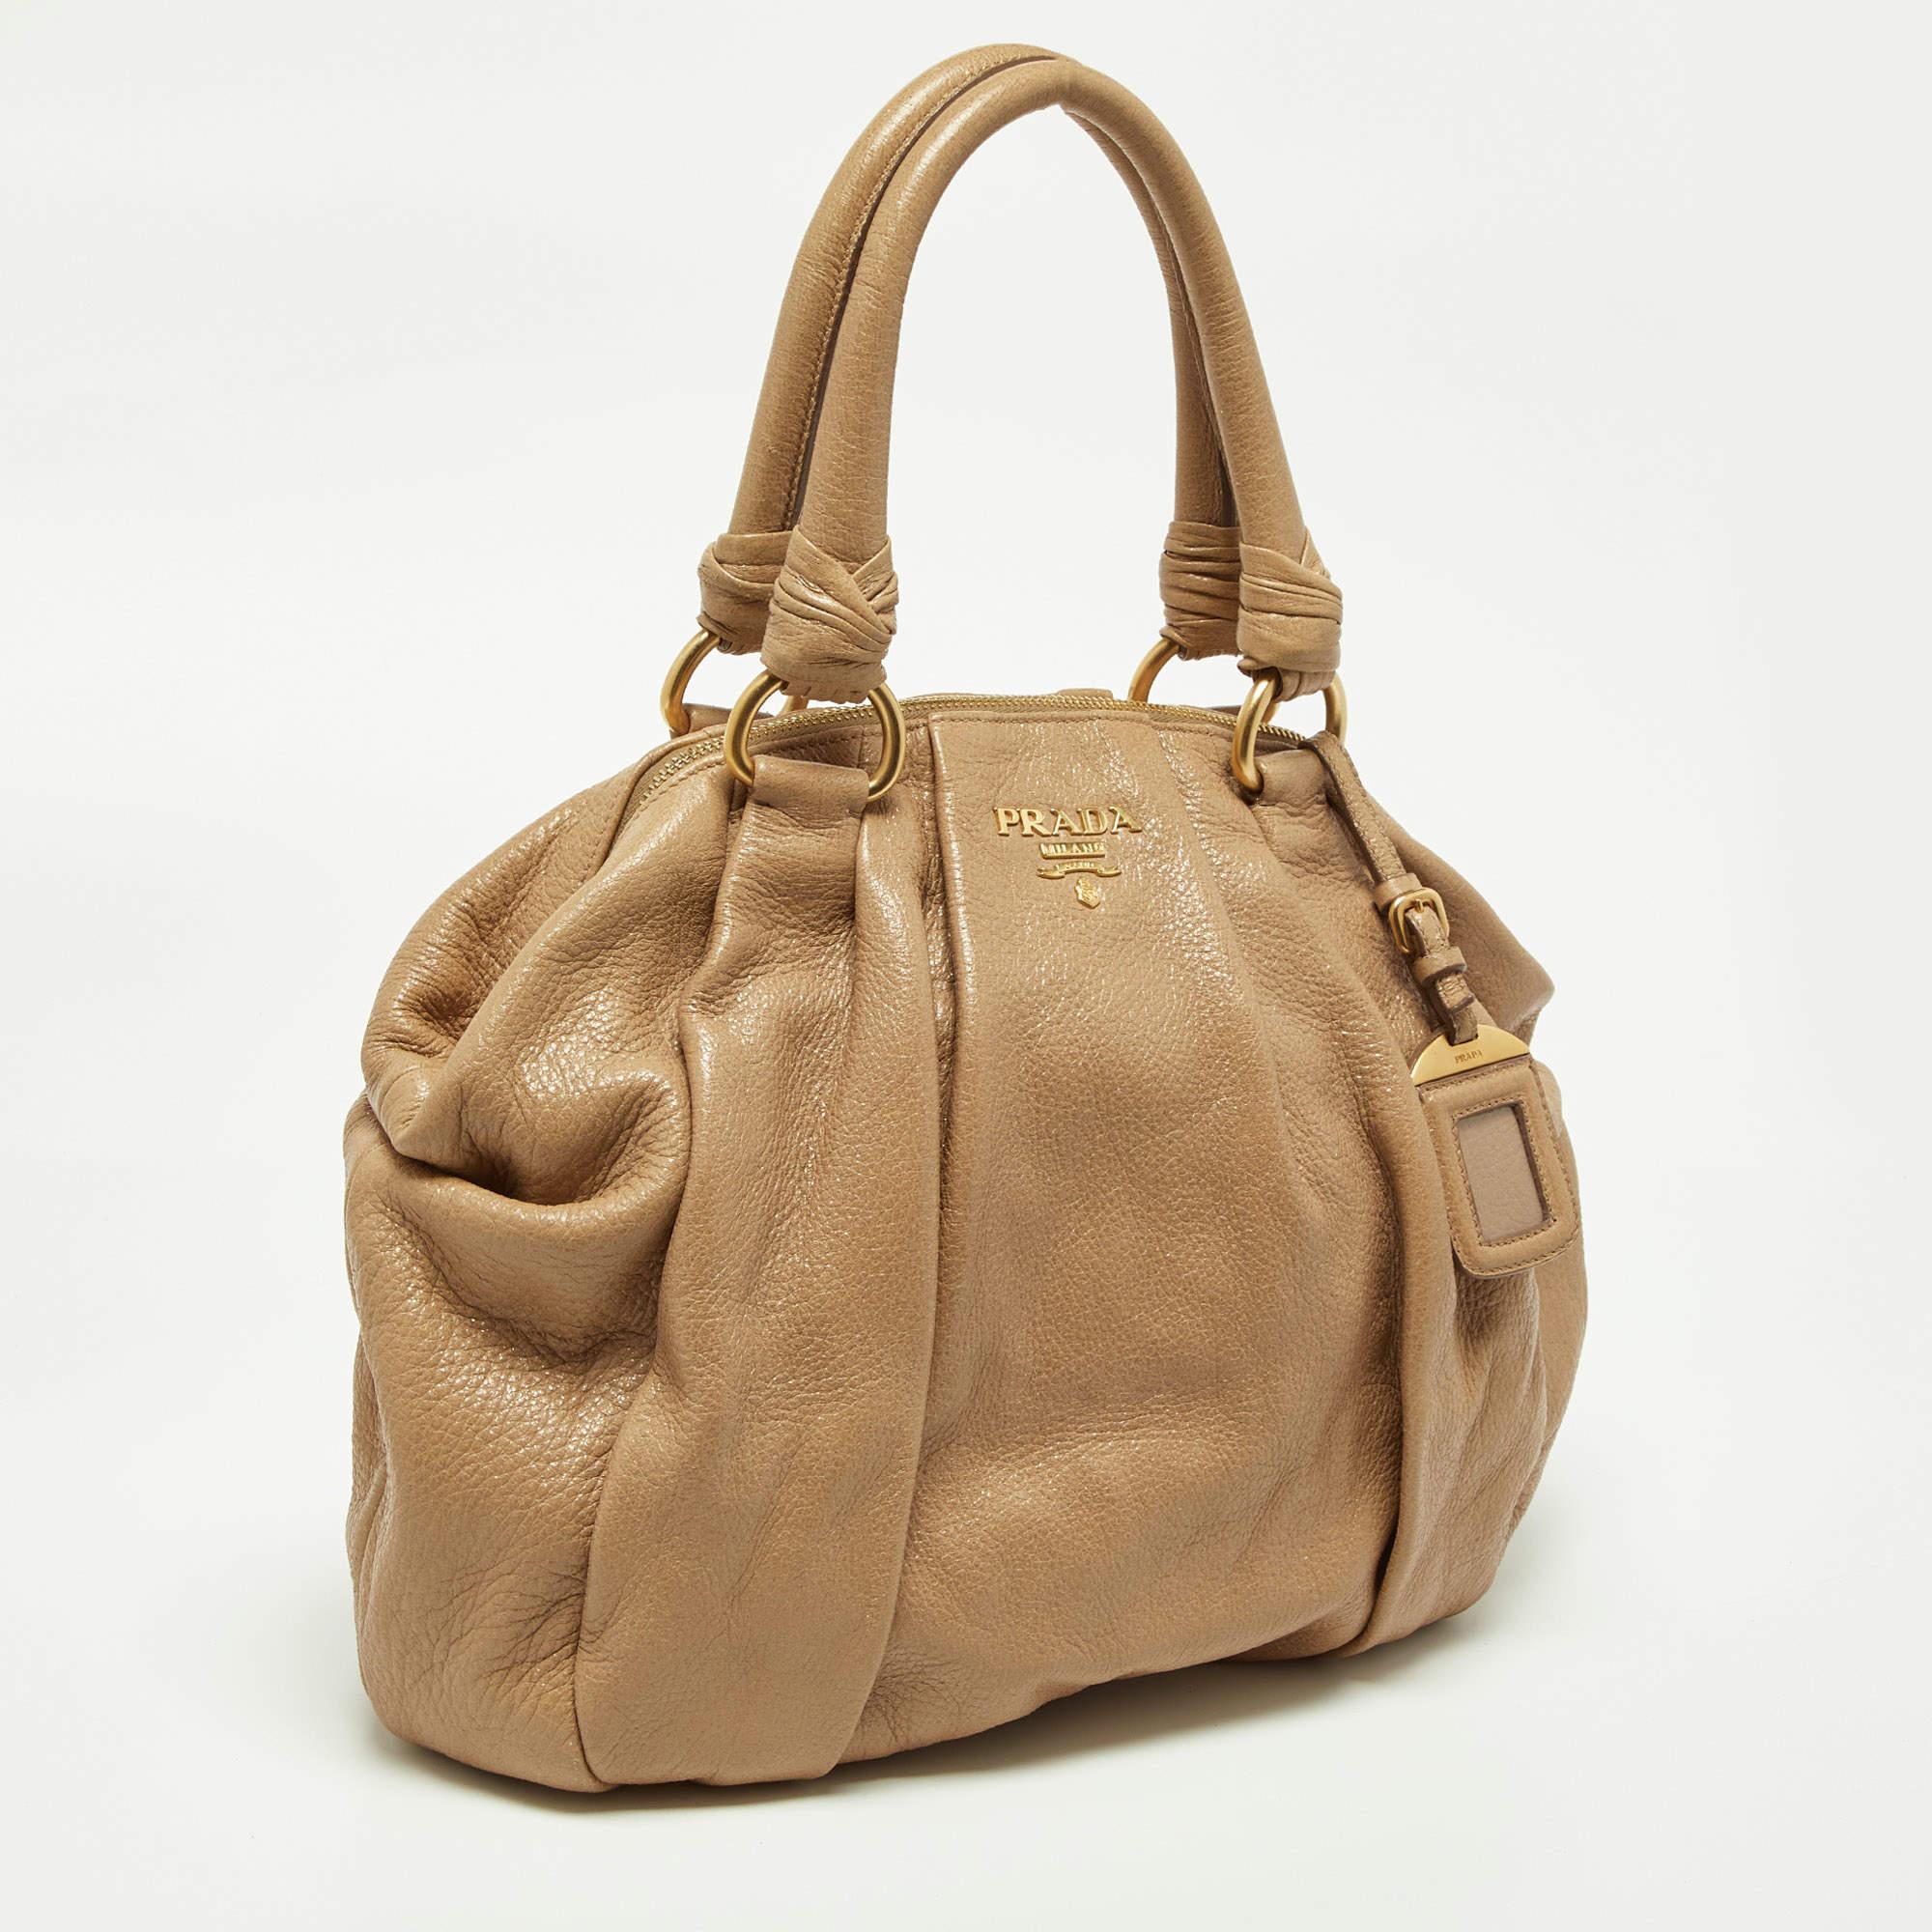 Stilvolle Handtaschen hinterlassen immer einen modischen Eindruck. Kombinieren Sie diese Designer-Hobo mit Ihrer raffinierten Arbeitskleidung sowie mit schicken Freizeitlooks.

